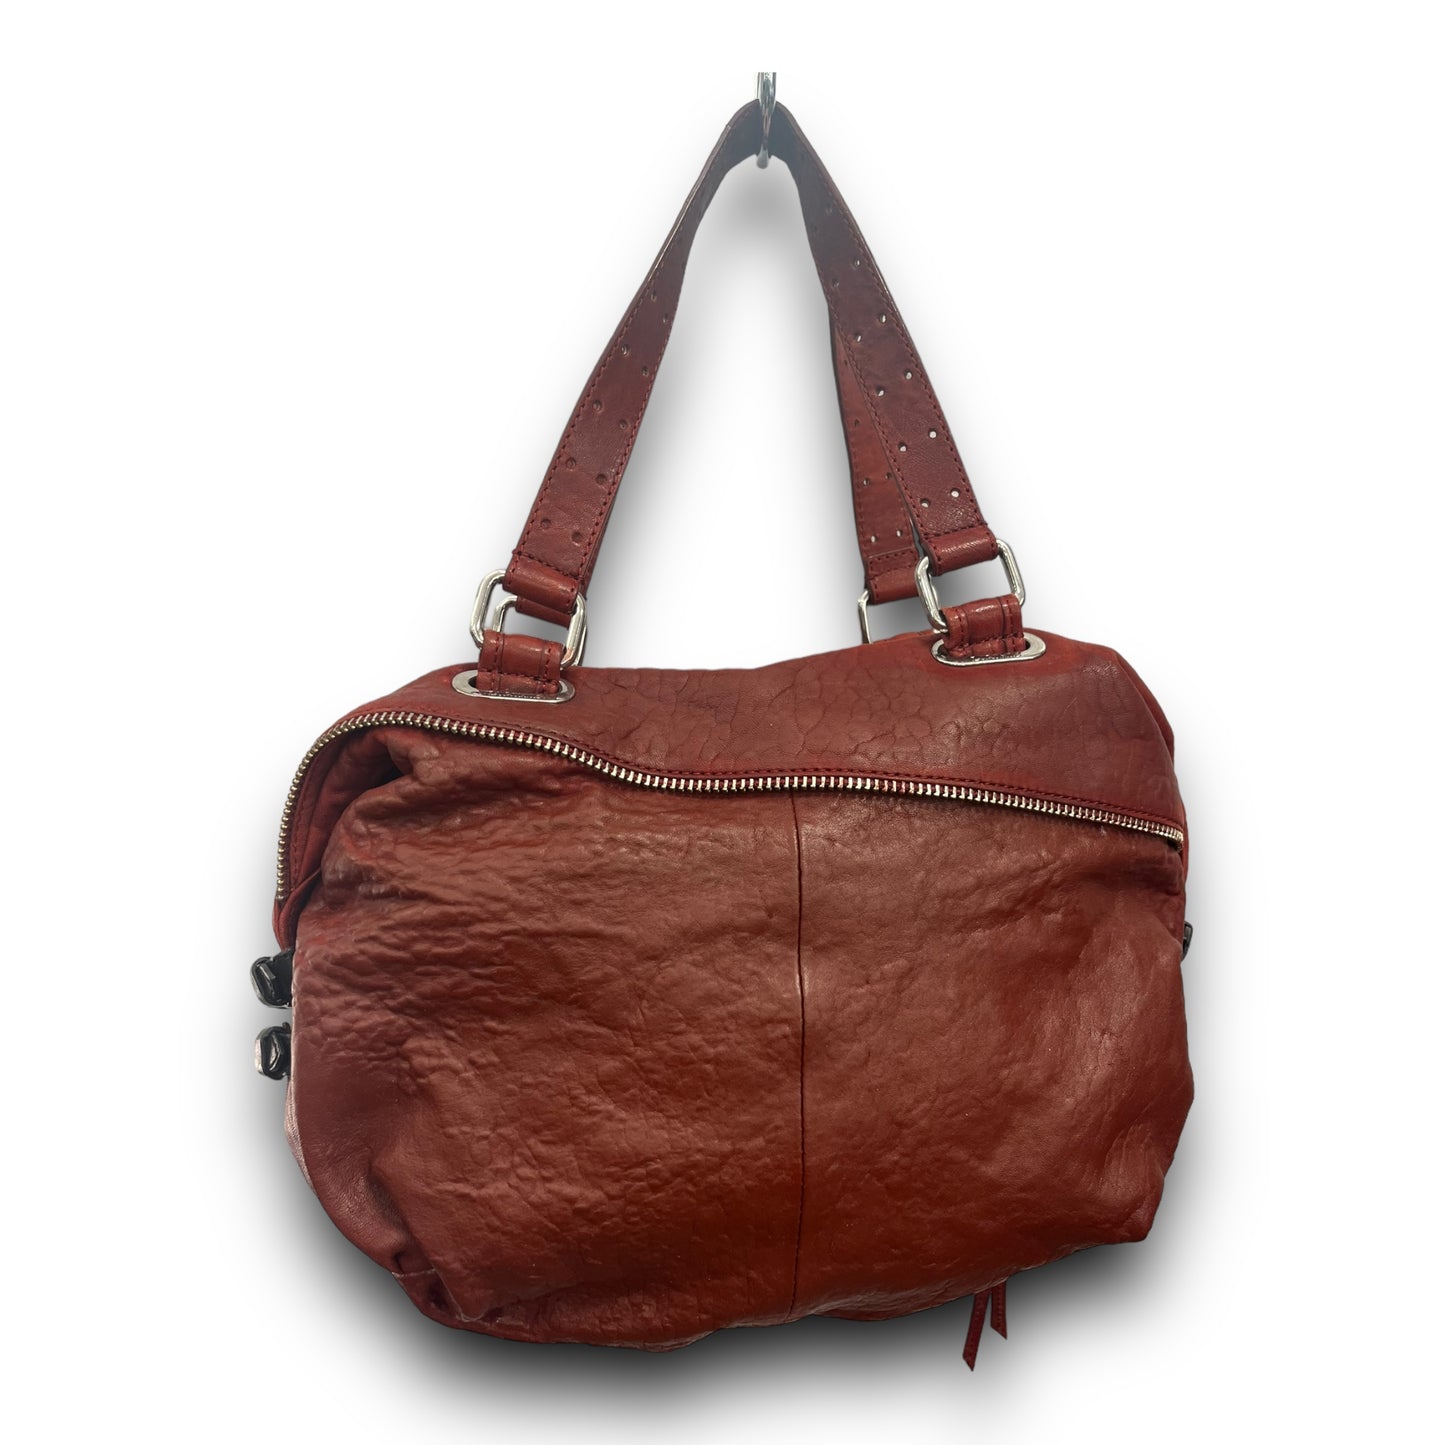 Handbag Designer By Lamb  Size: Medium